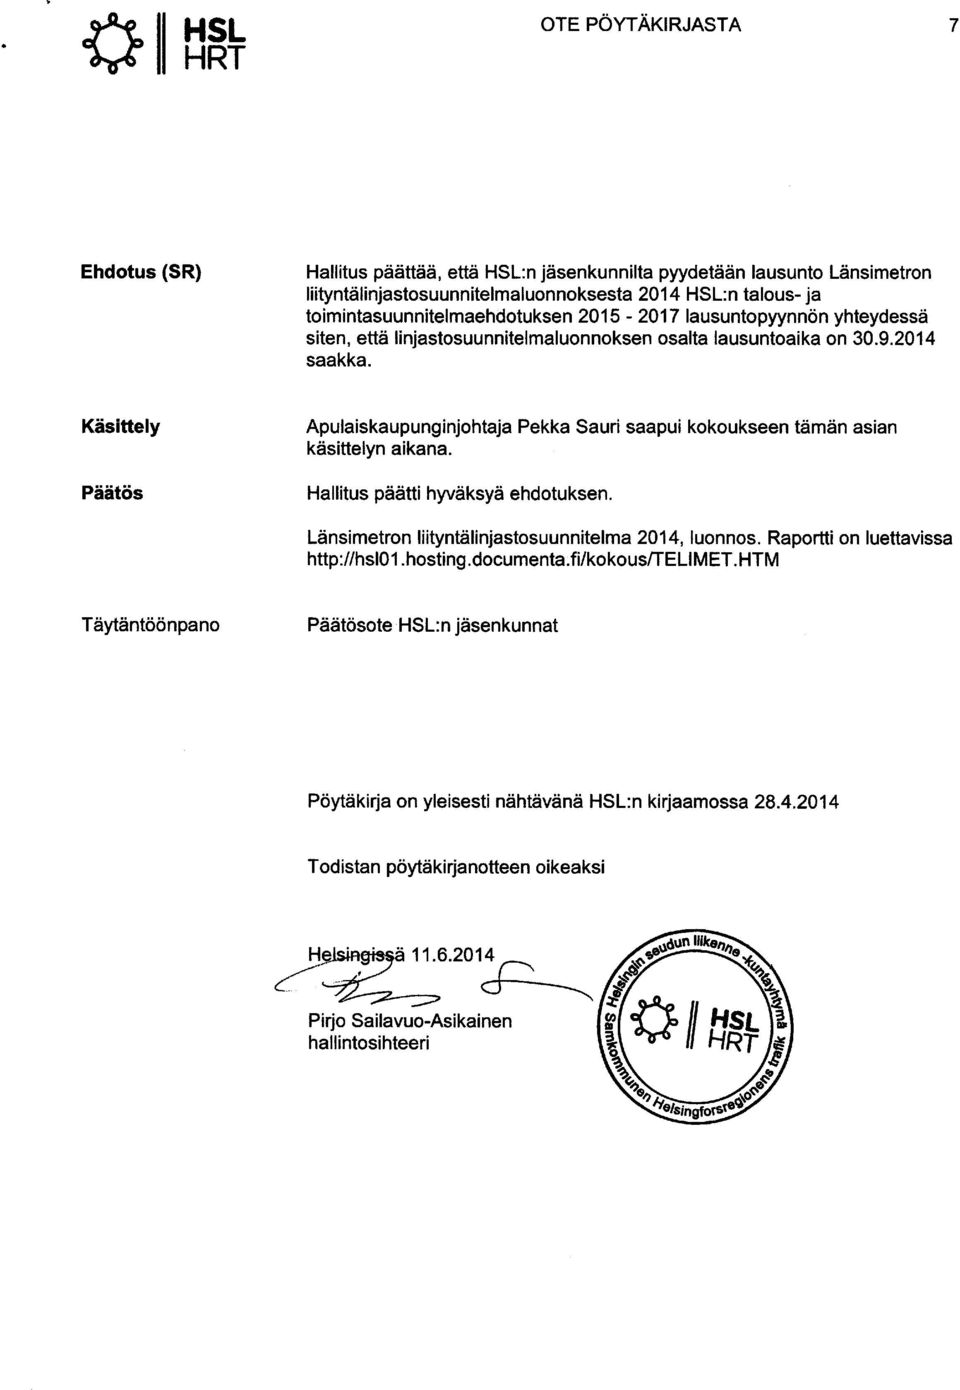 Käsittely Päätös Apulaiskaupunginjohtaja Pekka Sauri saapui kokoukseen tämän asian käsittelyn aikana. Hallitus päätti hyväksyä ehdotuksen. Länsimetron liityntälinjastosuunnitelma 2014, luonnos.